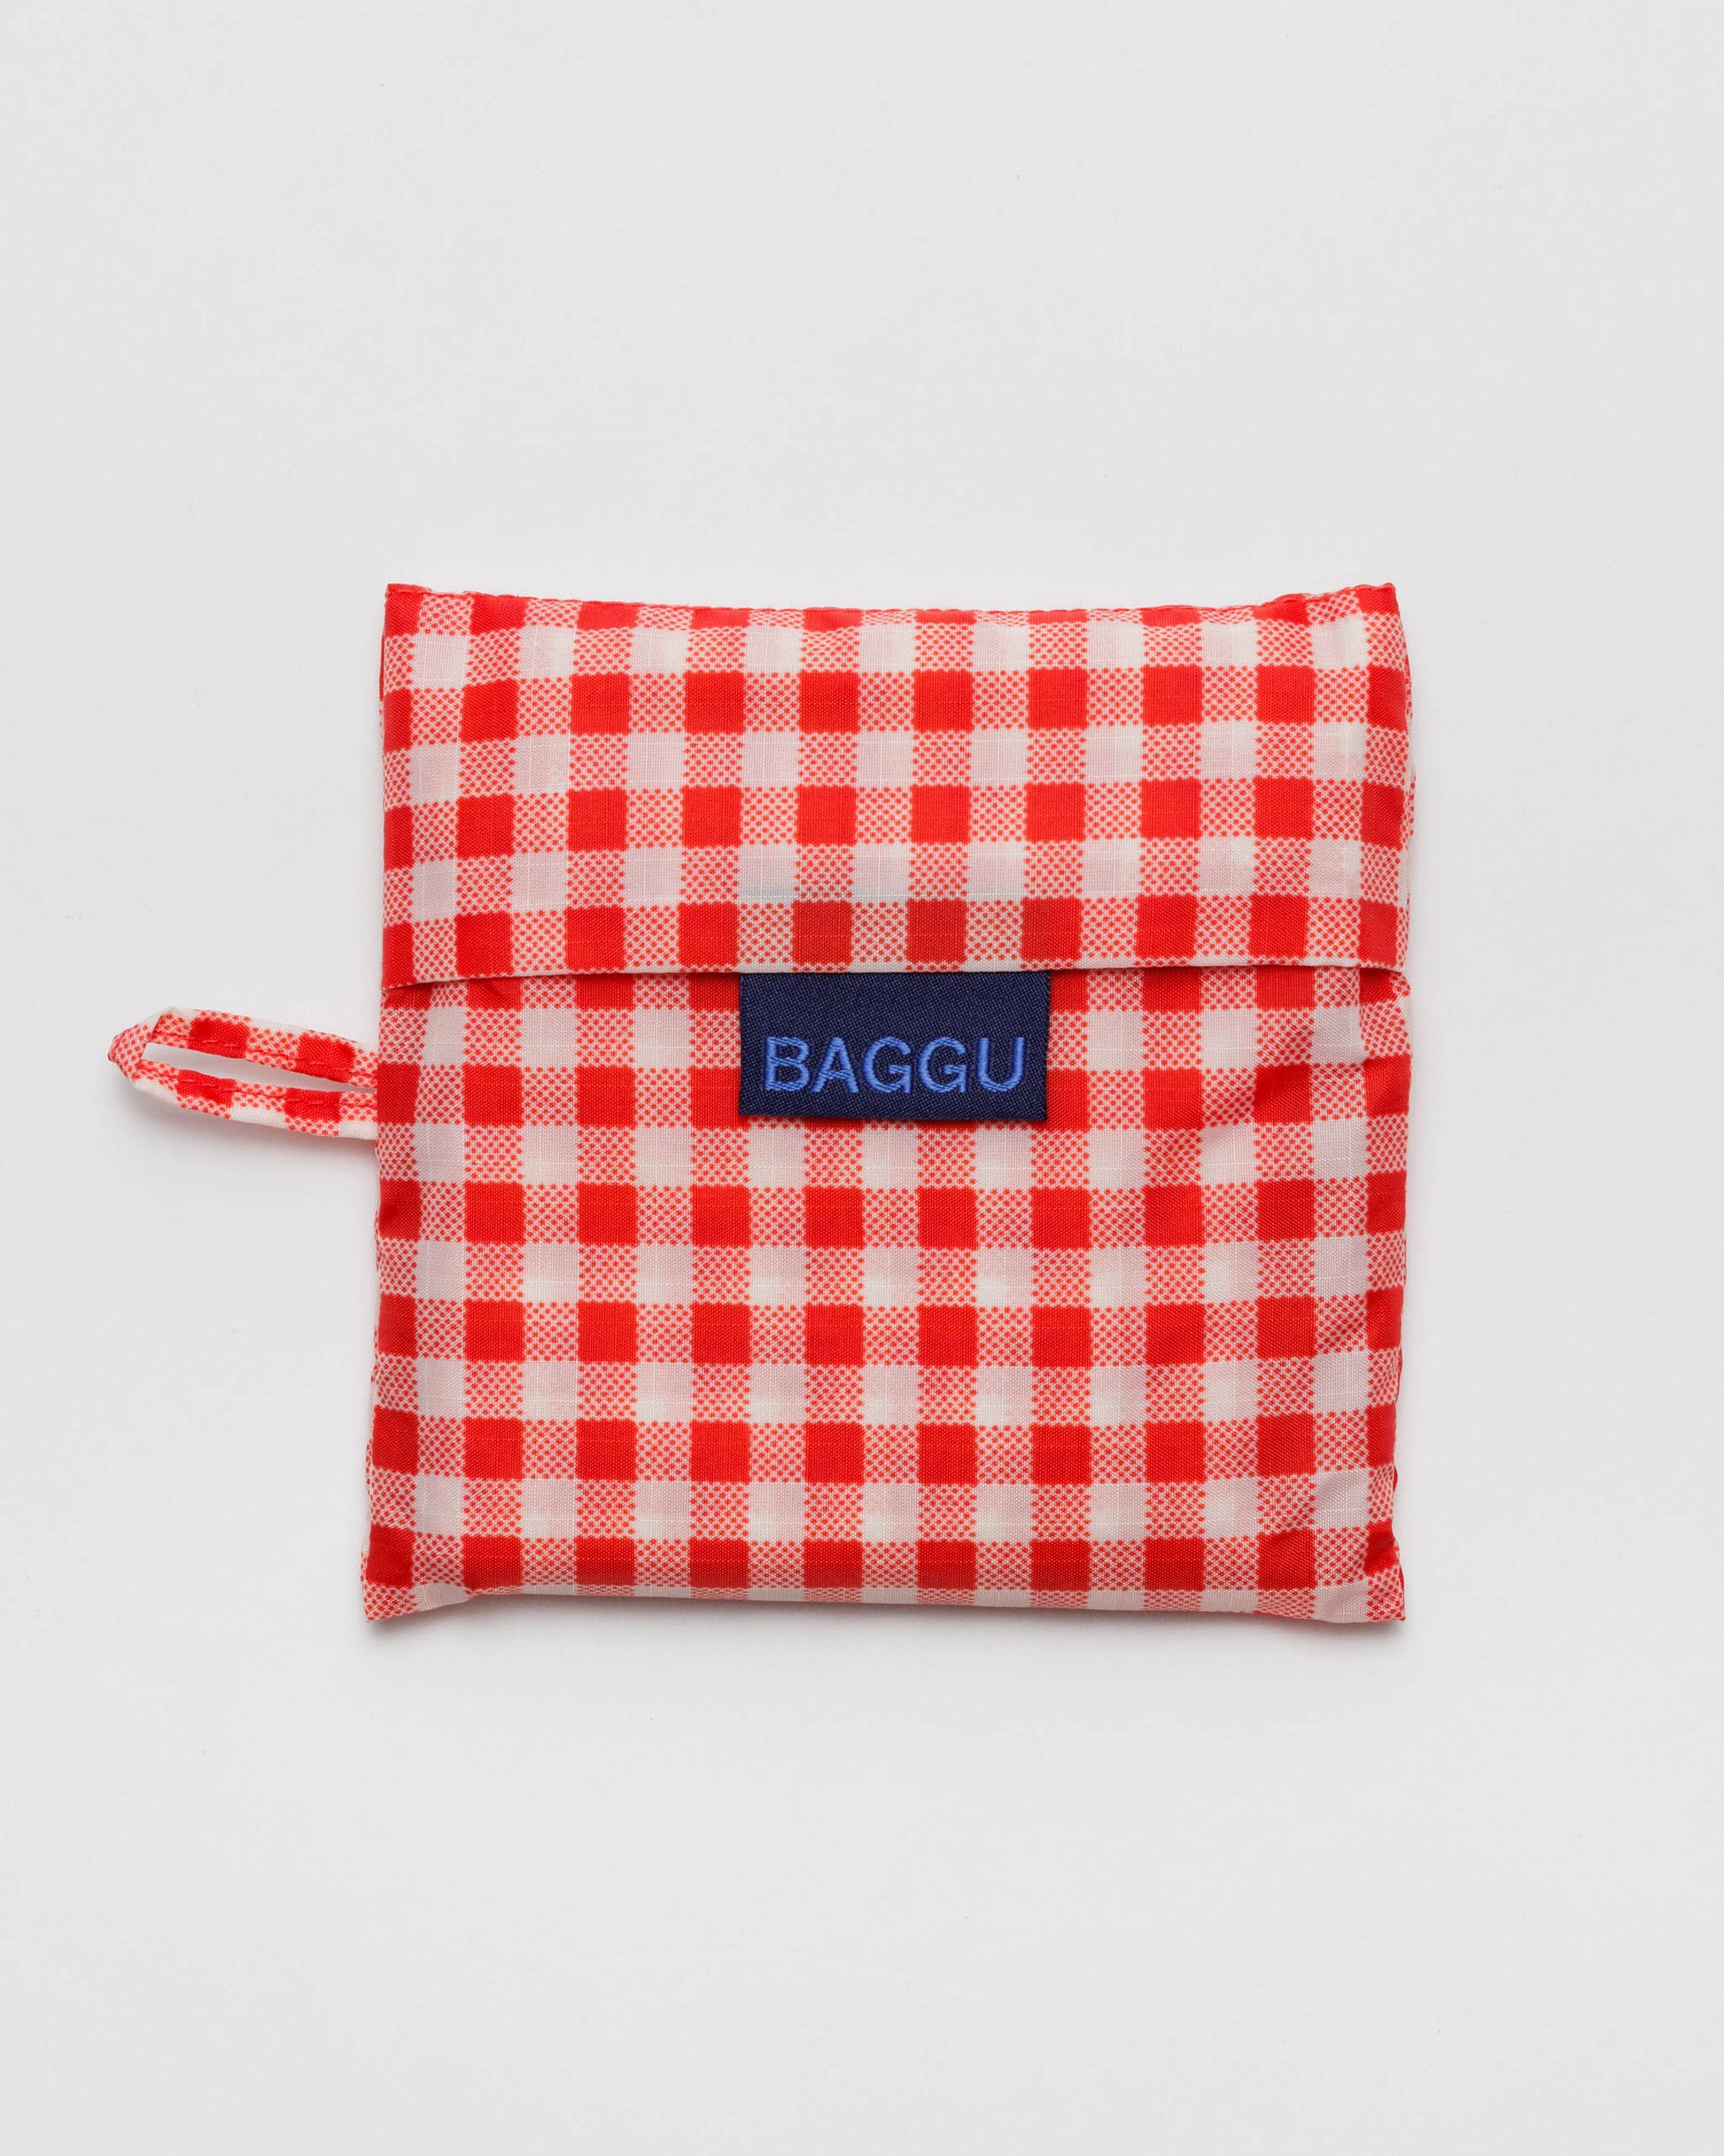 Standard BAGGU Reusable Bag - Red Gingham | RALLY RALLY Singapore